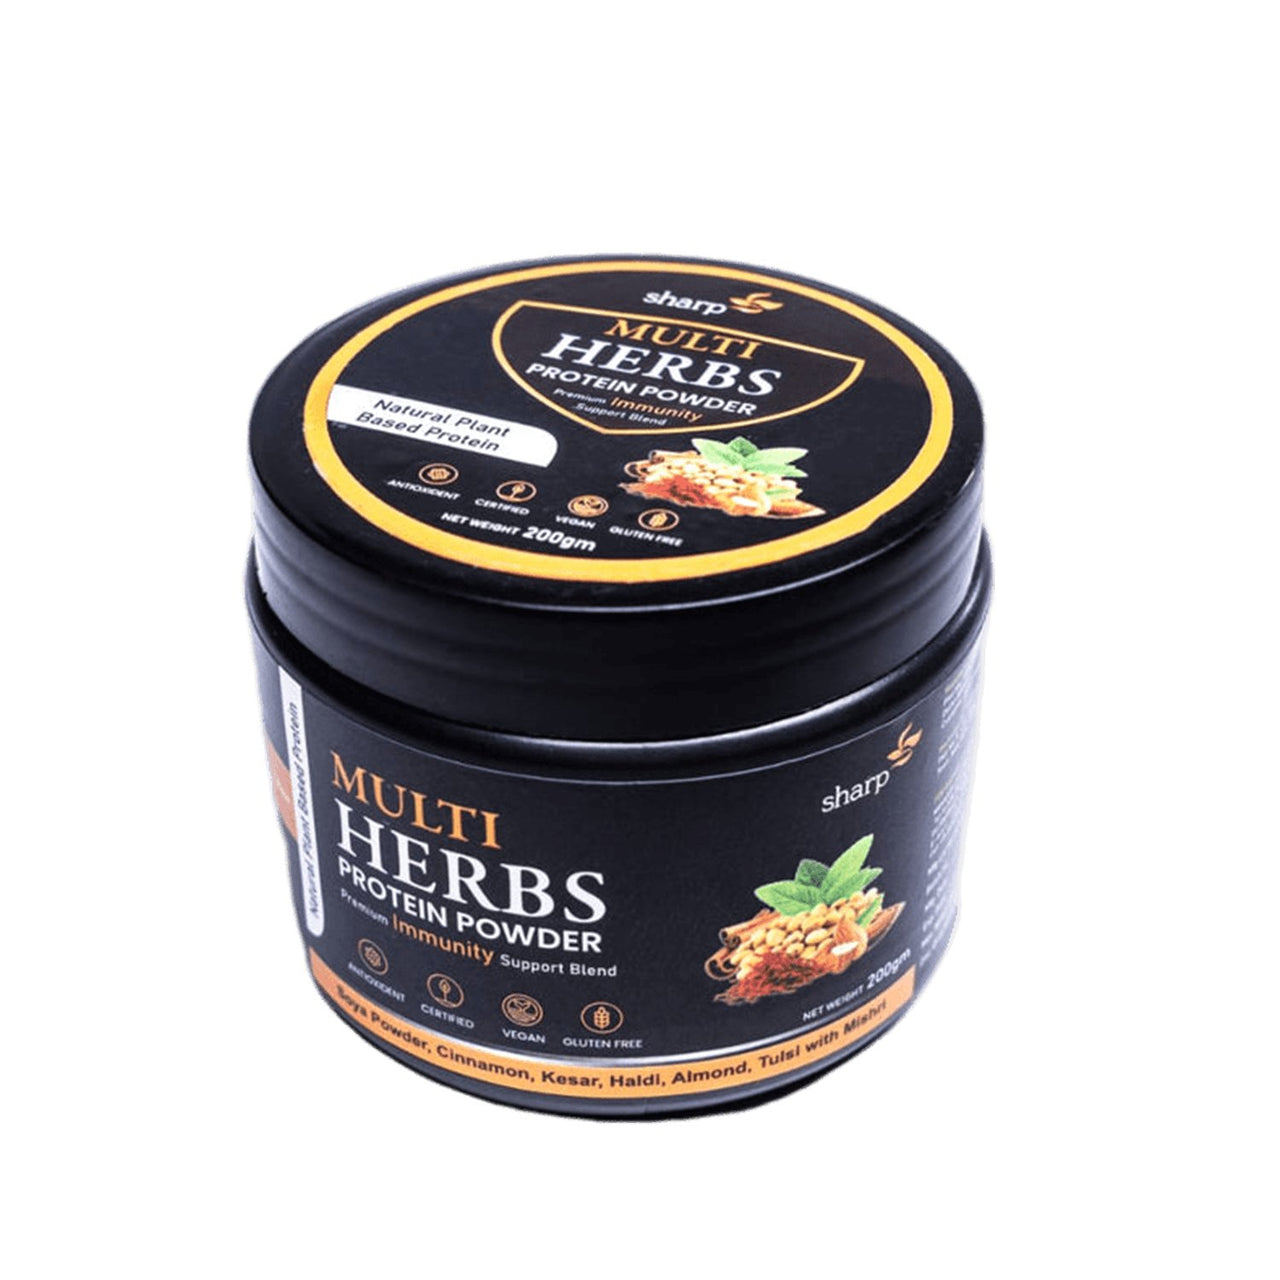 Sharp Hemp - Multi Herb Protein Powder - CBD Store India